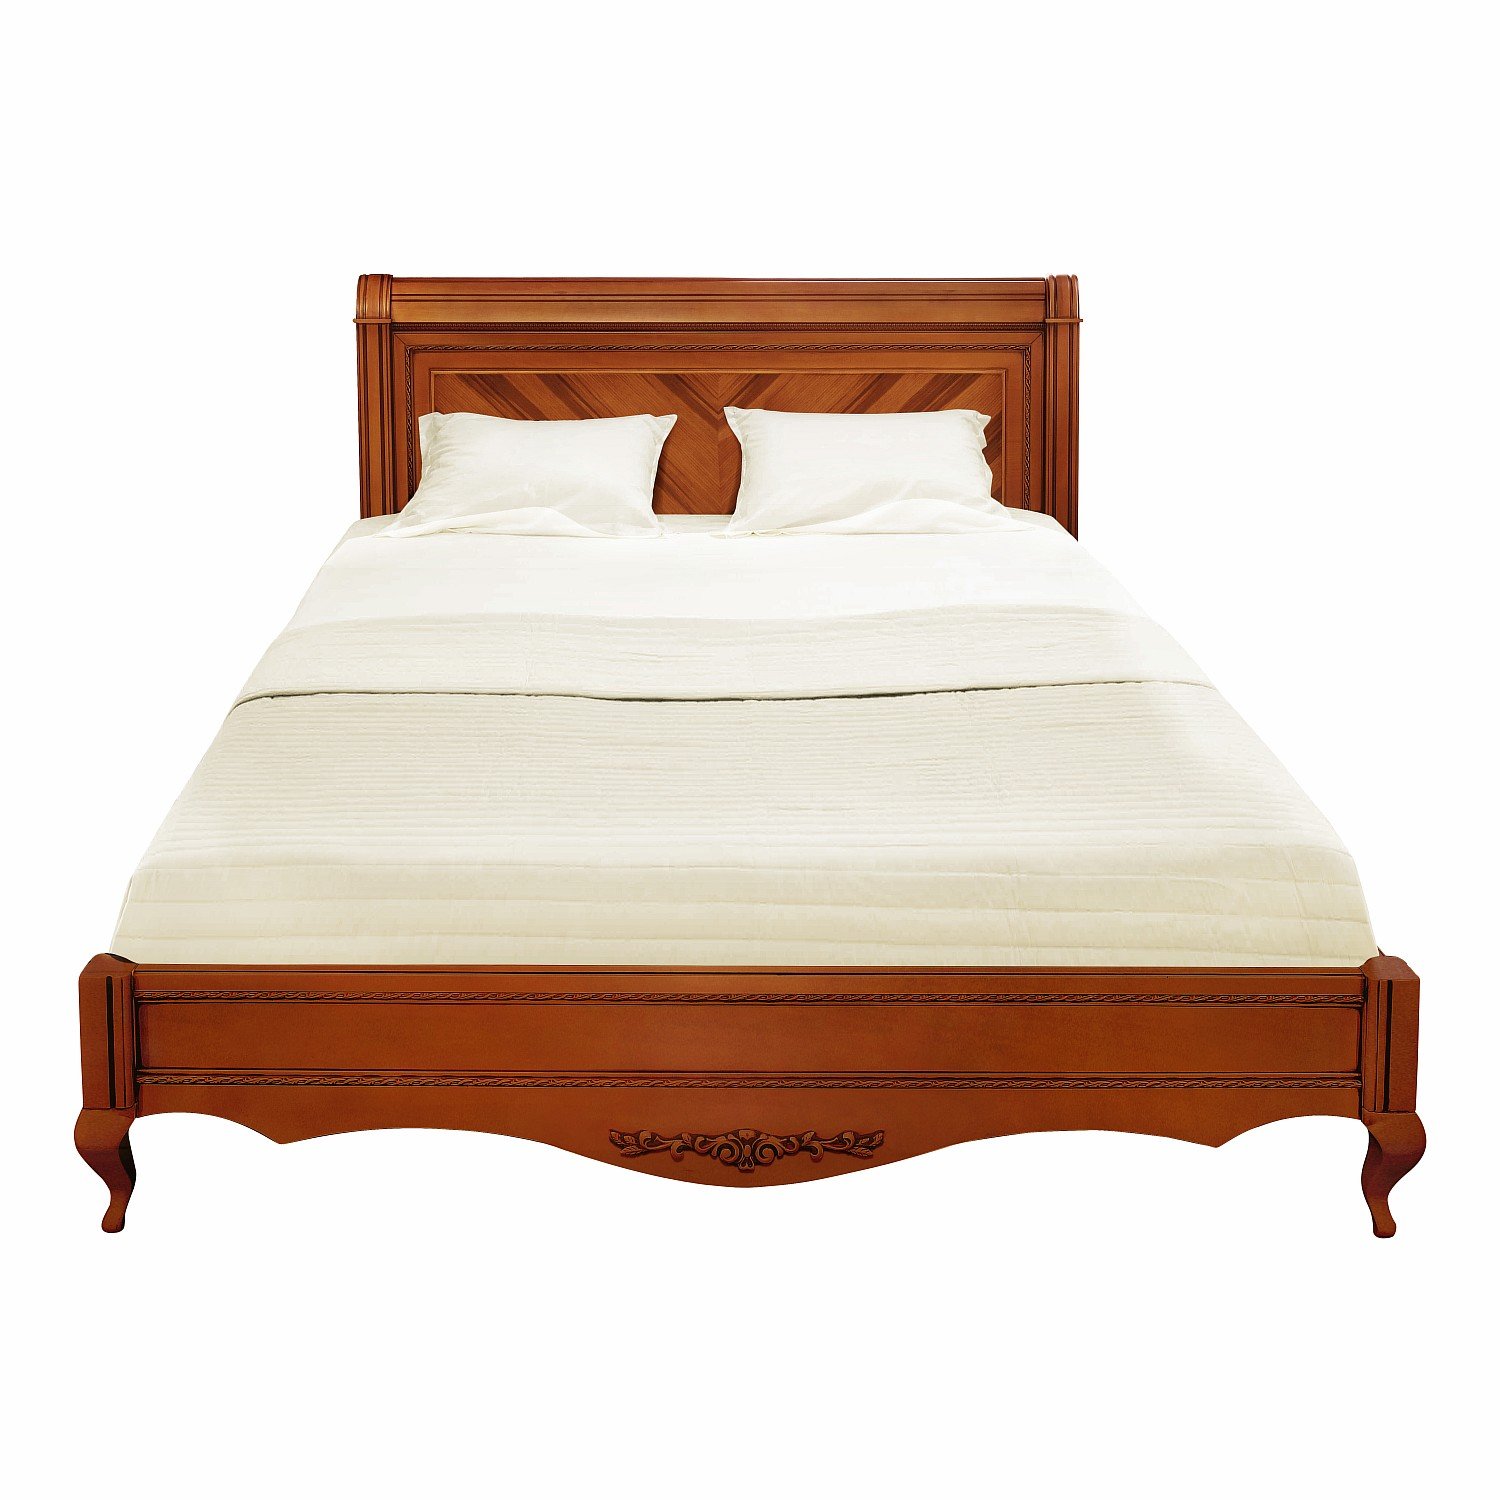 Кровать Timber Неаполь, двуспальная 180x200 см цвет: янтарь (T-538)T-538